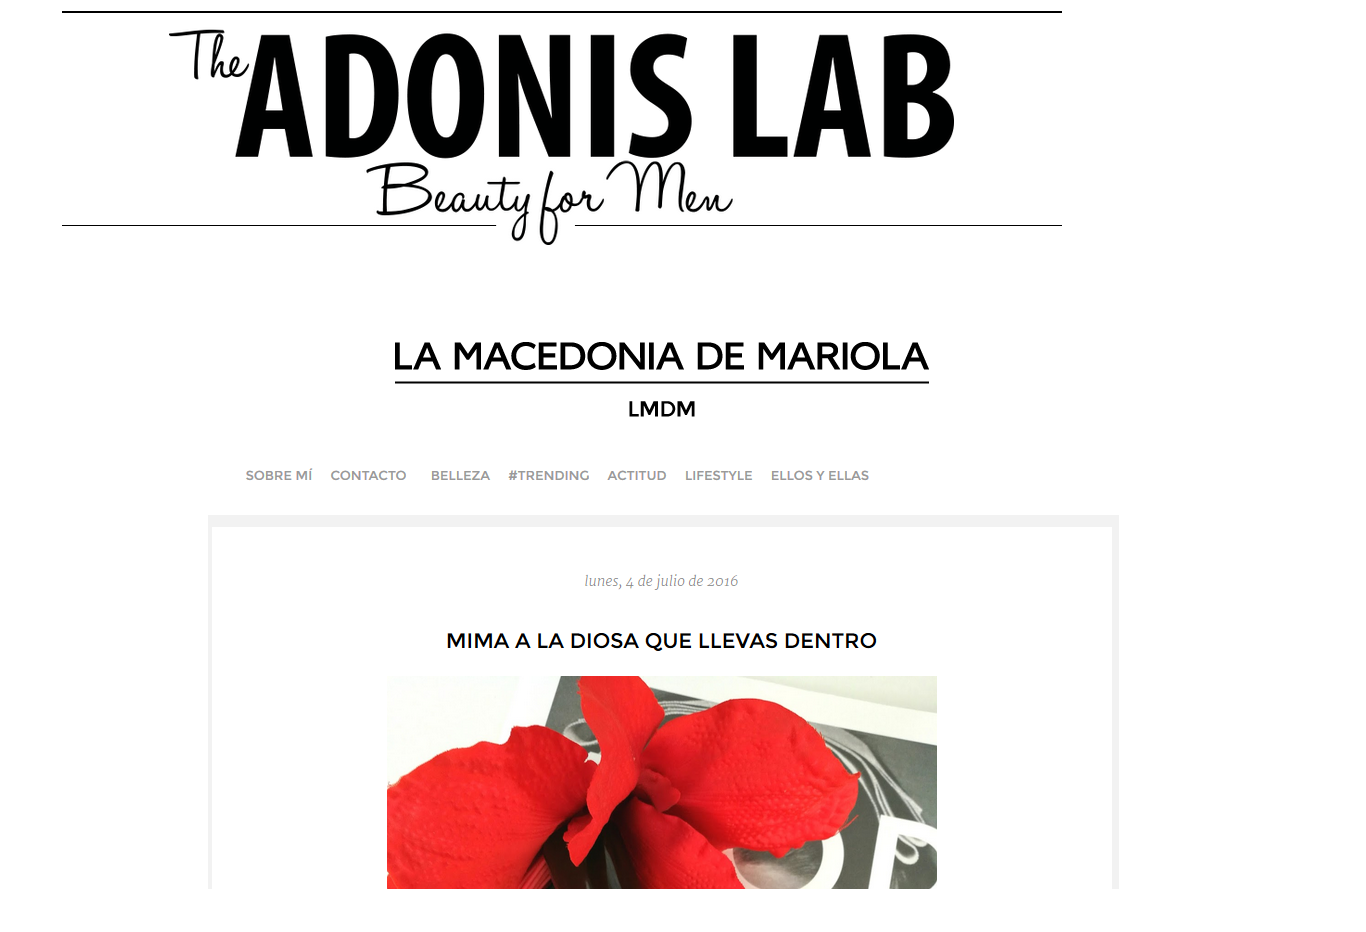 Hablan de nosotros en The Adonis Lab y La Macedonia de Mariola